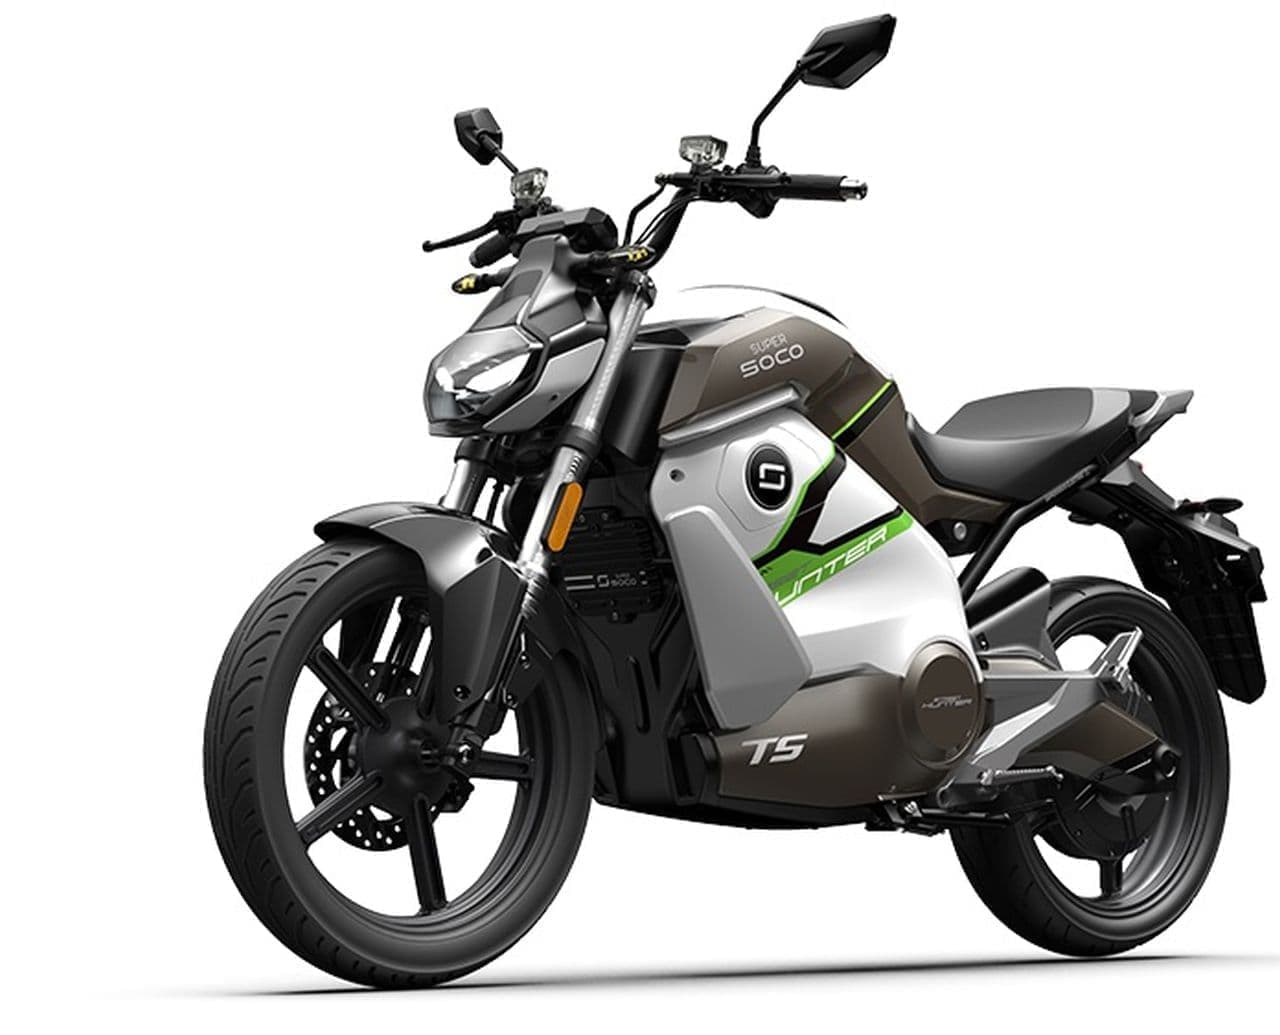 ストリートファイタースタイルの電動バイクSUPER SOCO「TS ストリートハンター」発売 ― 電動バイクブランドXEAMから